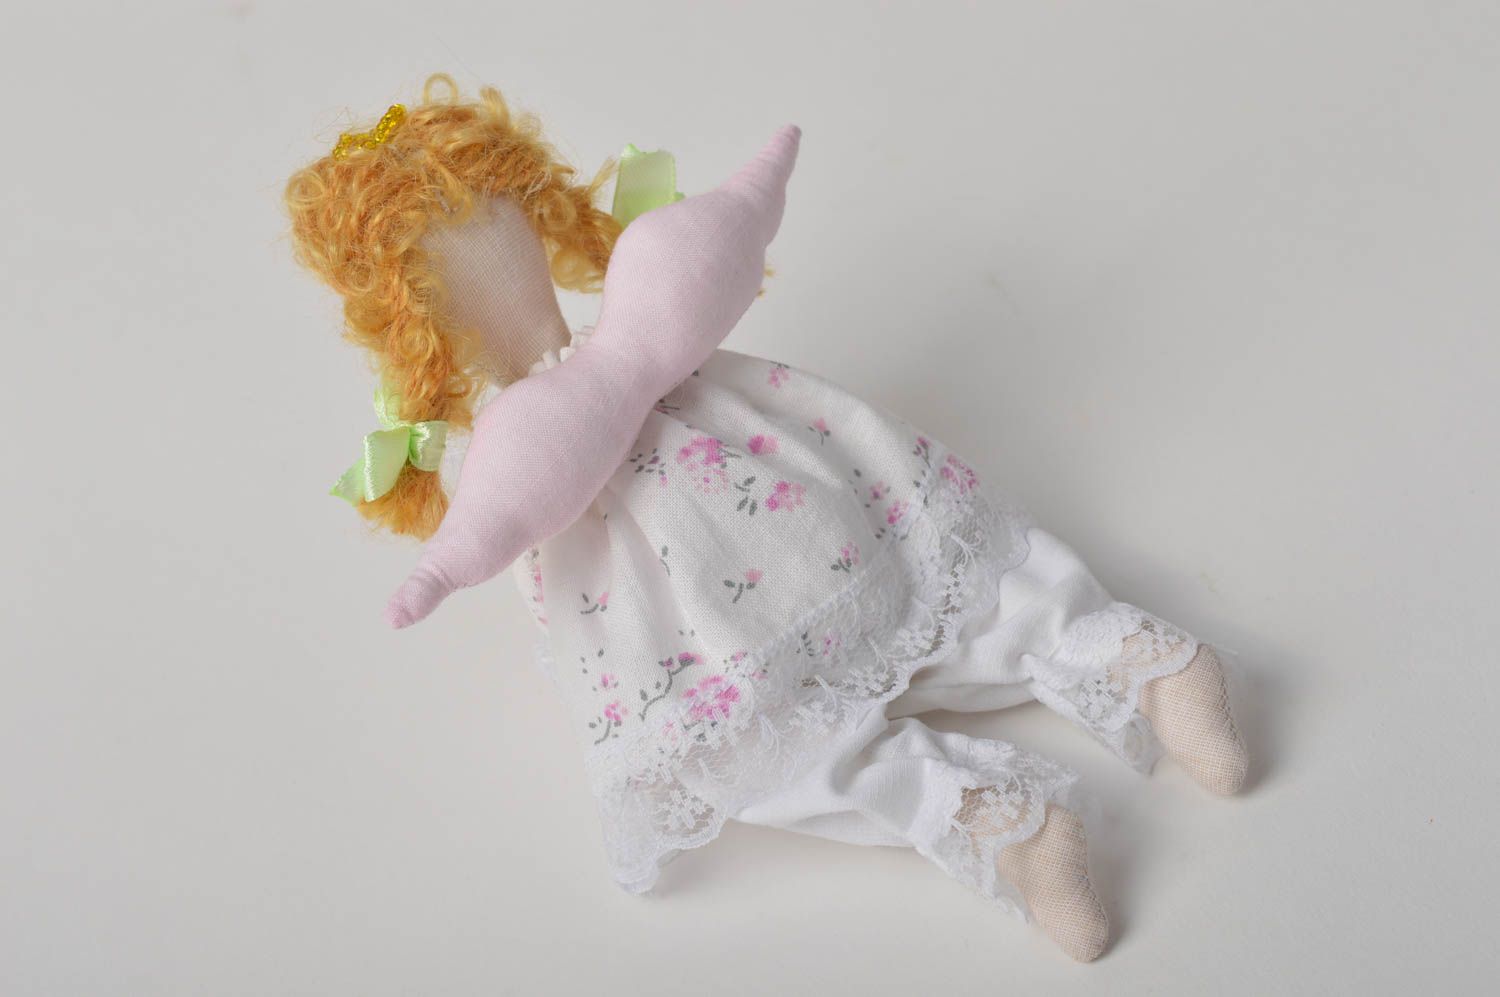 Handmade doll designer doll for baby fabric doll gift for girl nursery decor photo 4